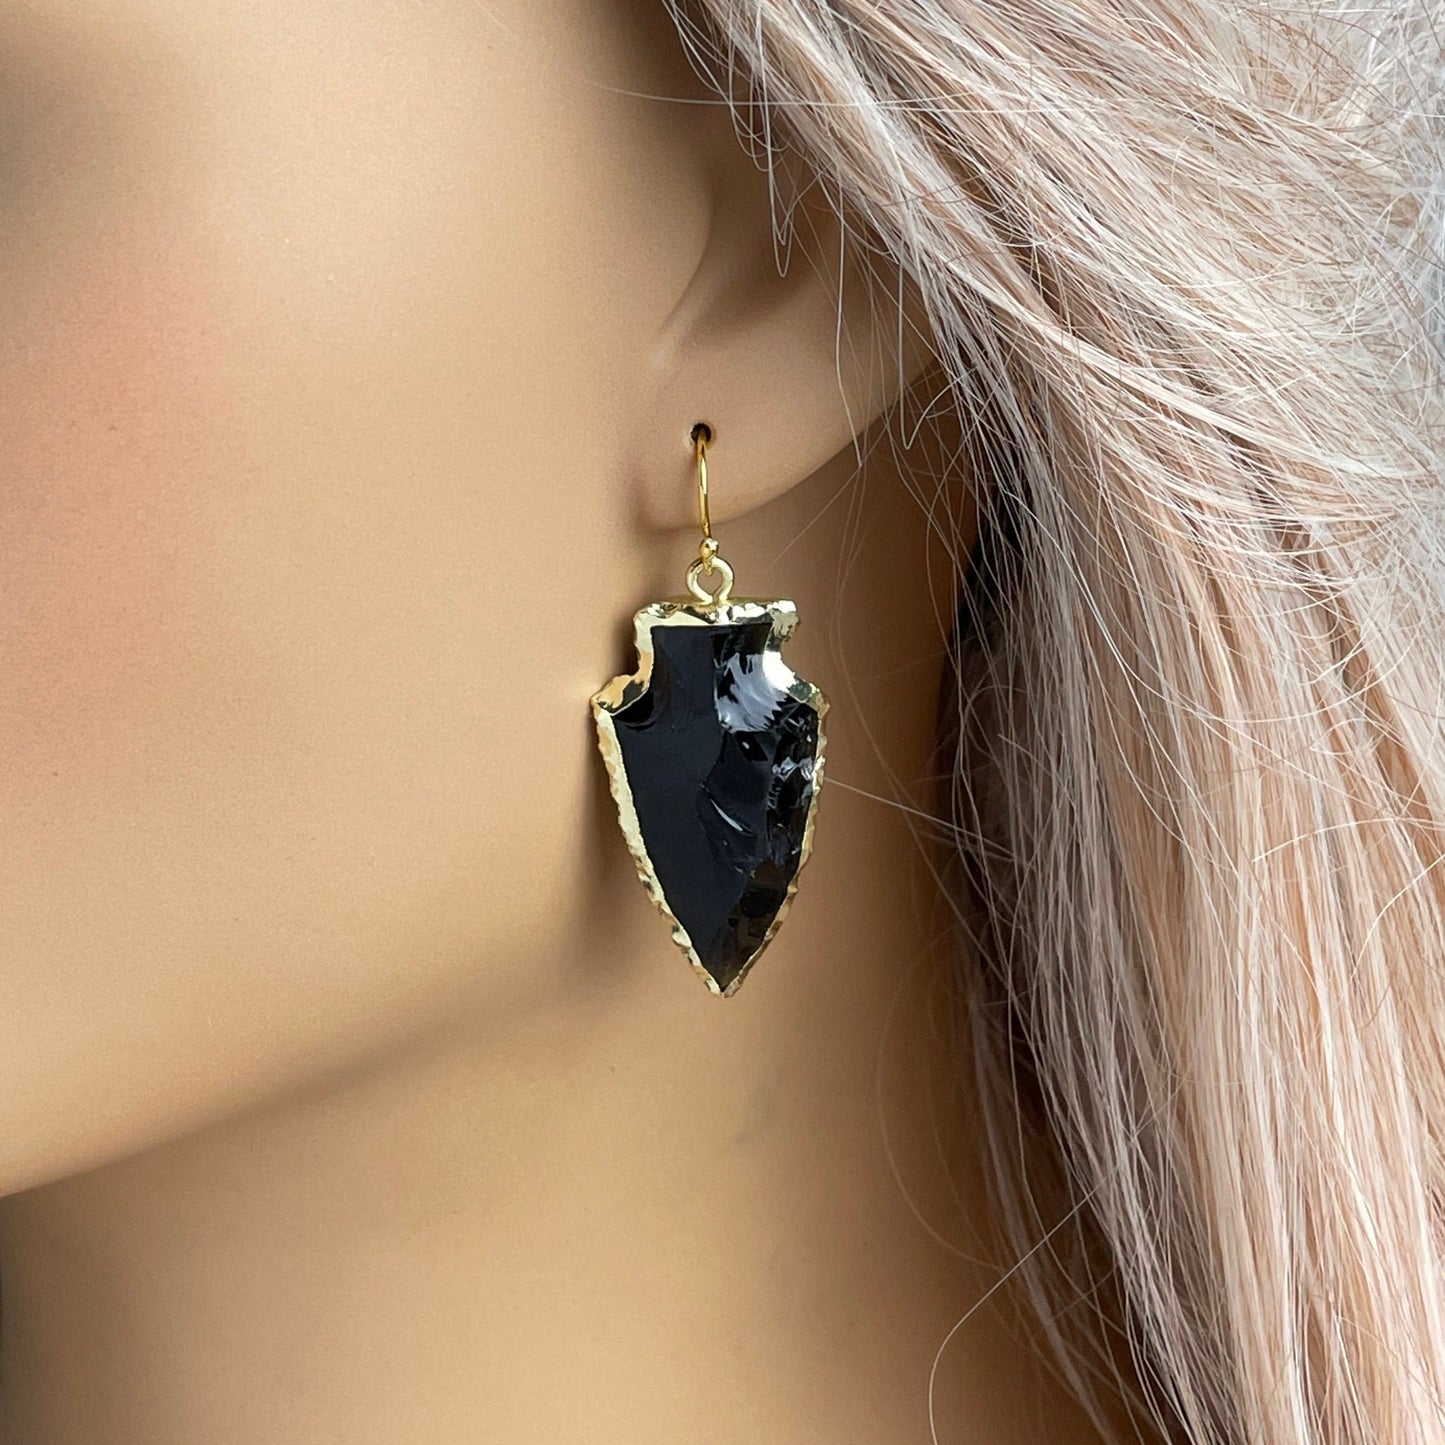 Arrowhead Earrings - Black Obsidian Earring Gold